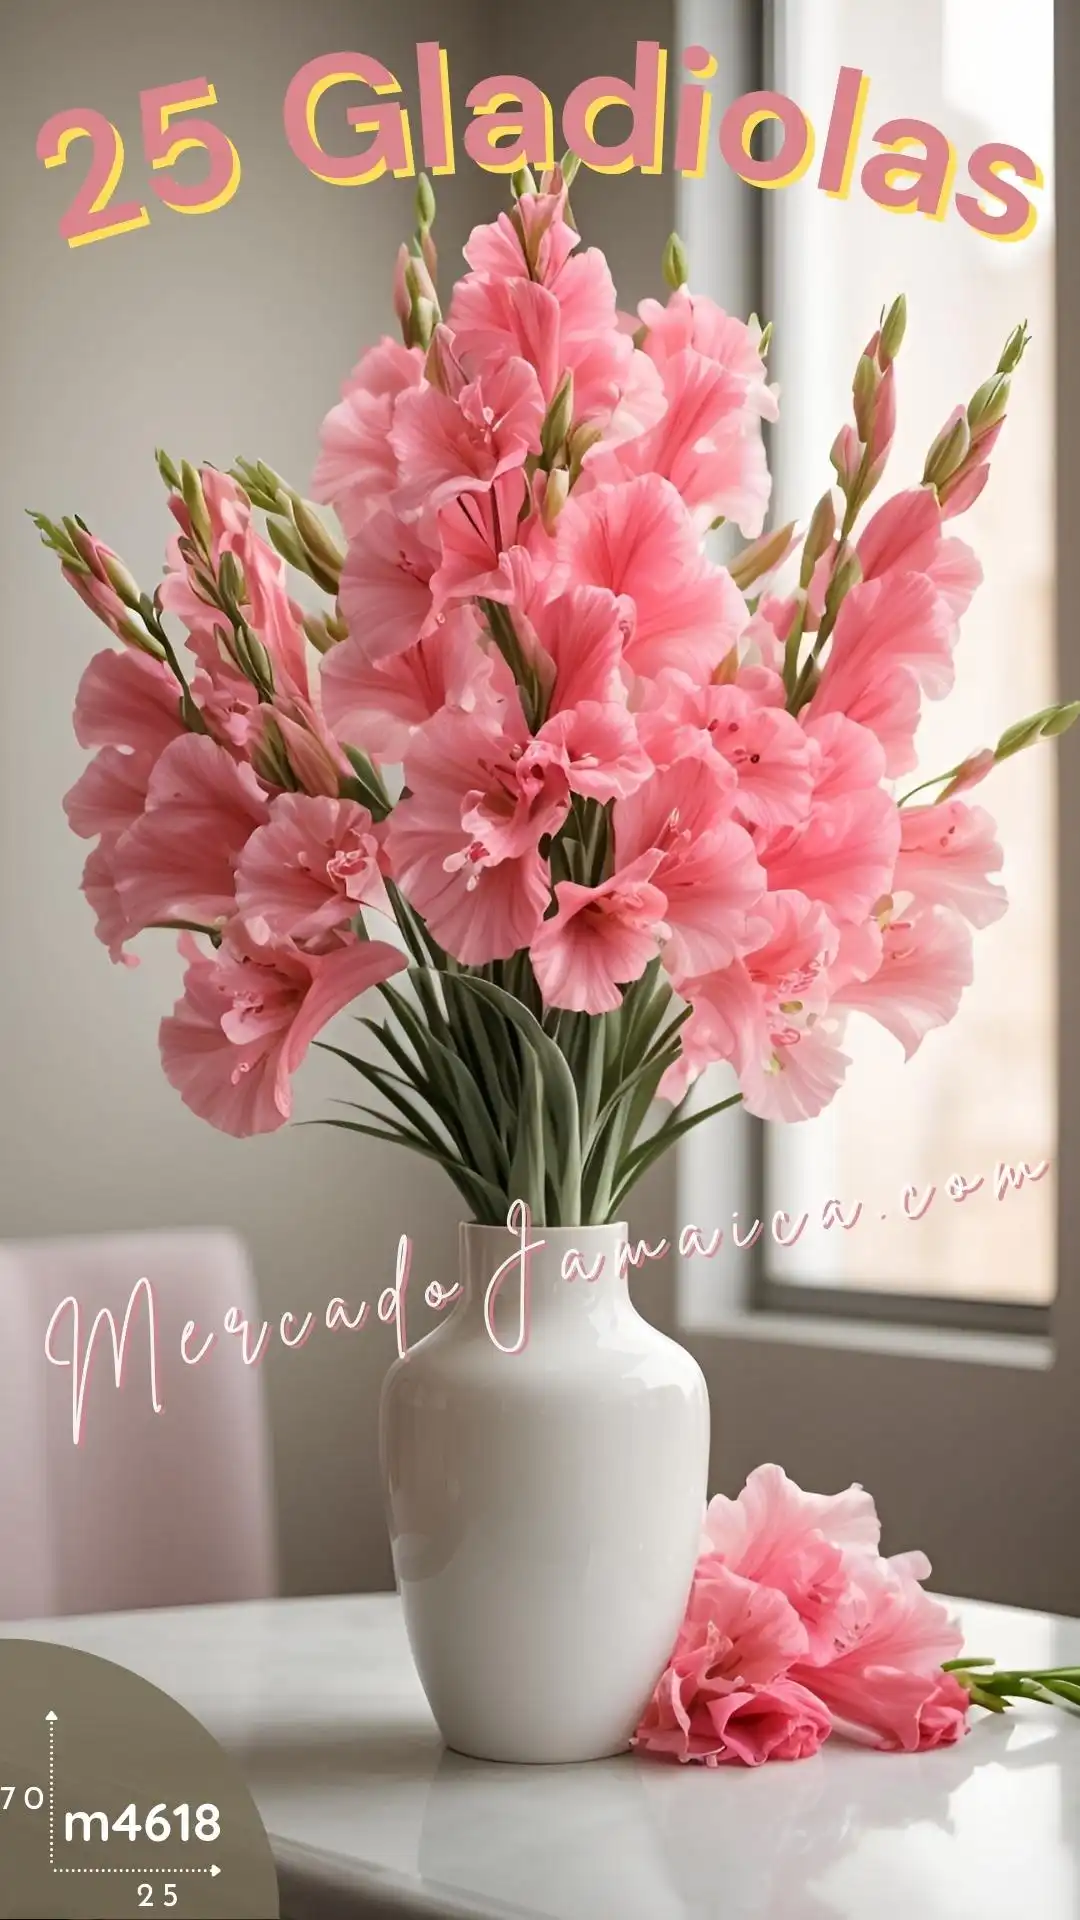 Flores clásicas 25 gladiolas rosa